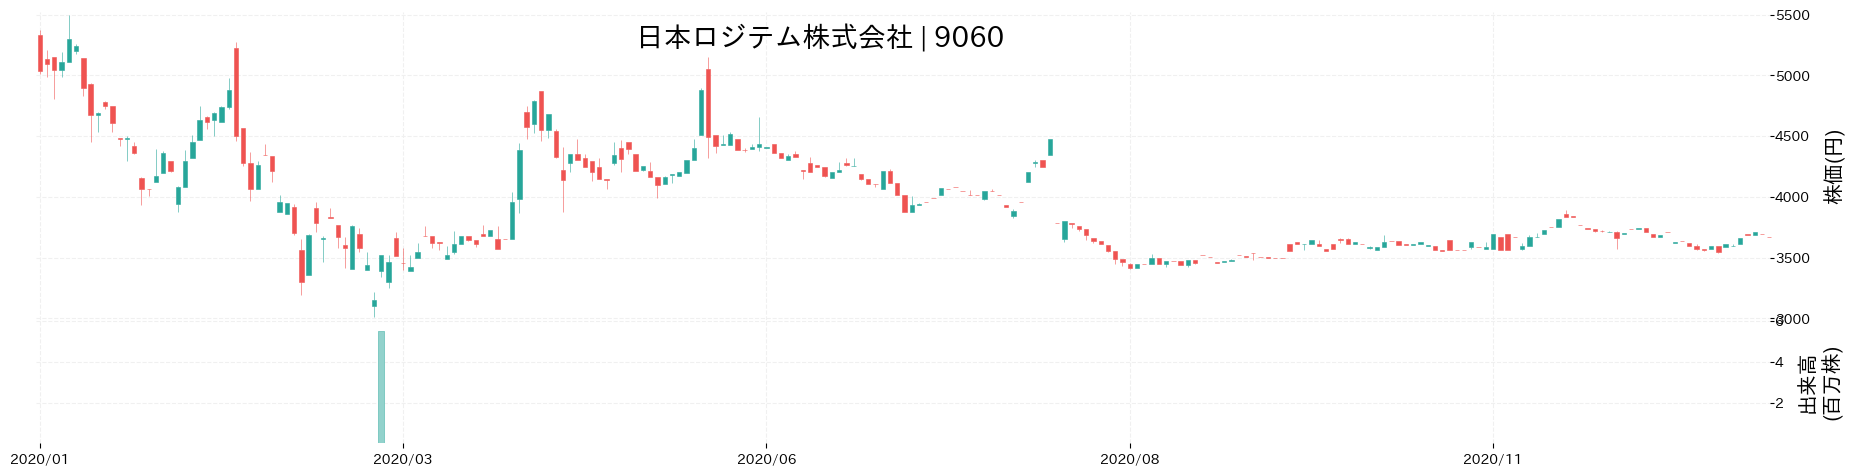 日本ロジテムの株価推移(2020)